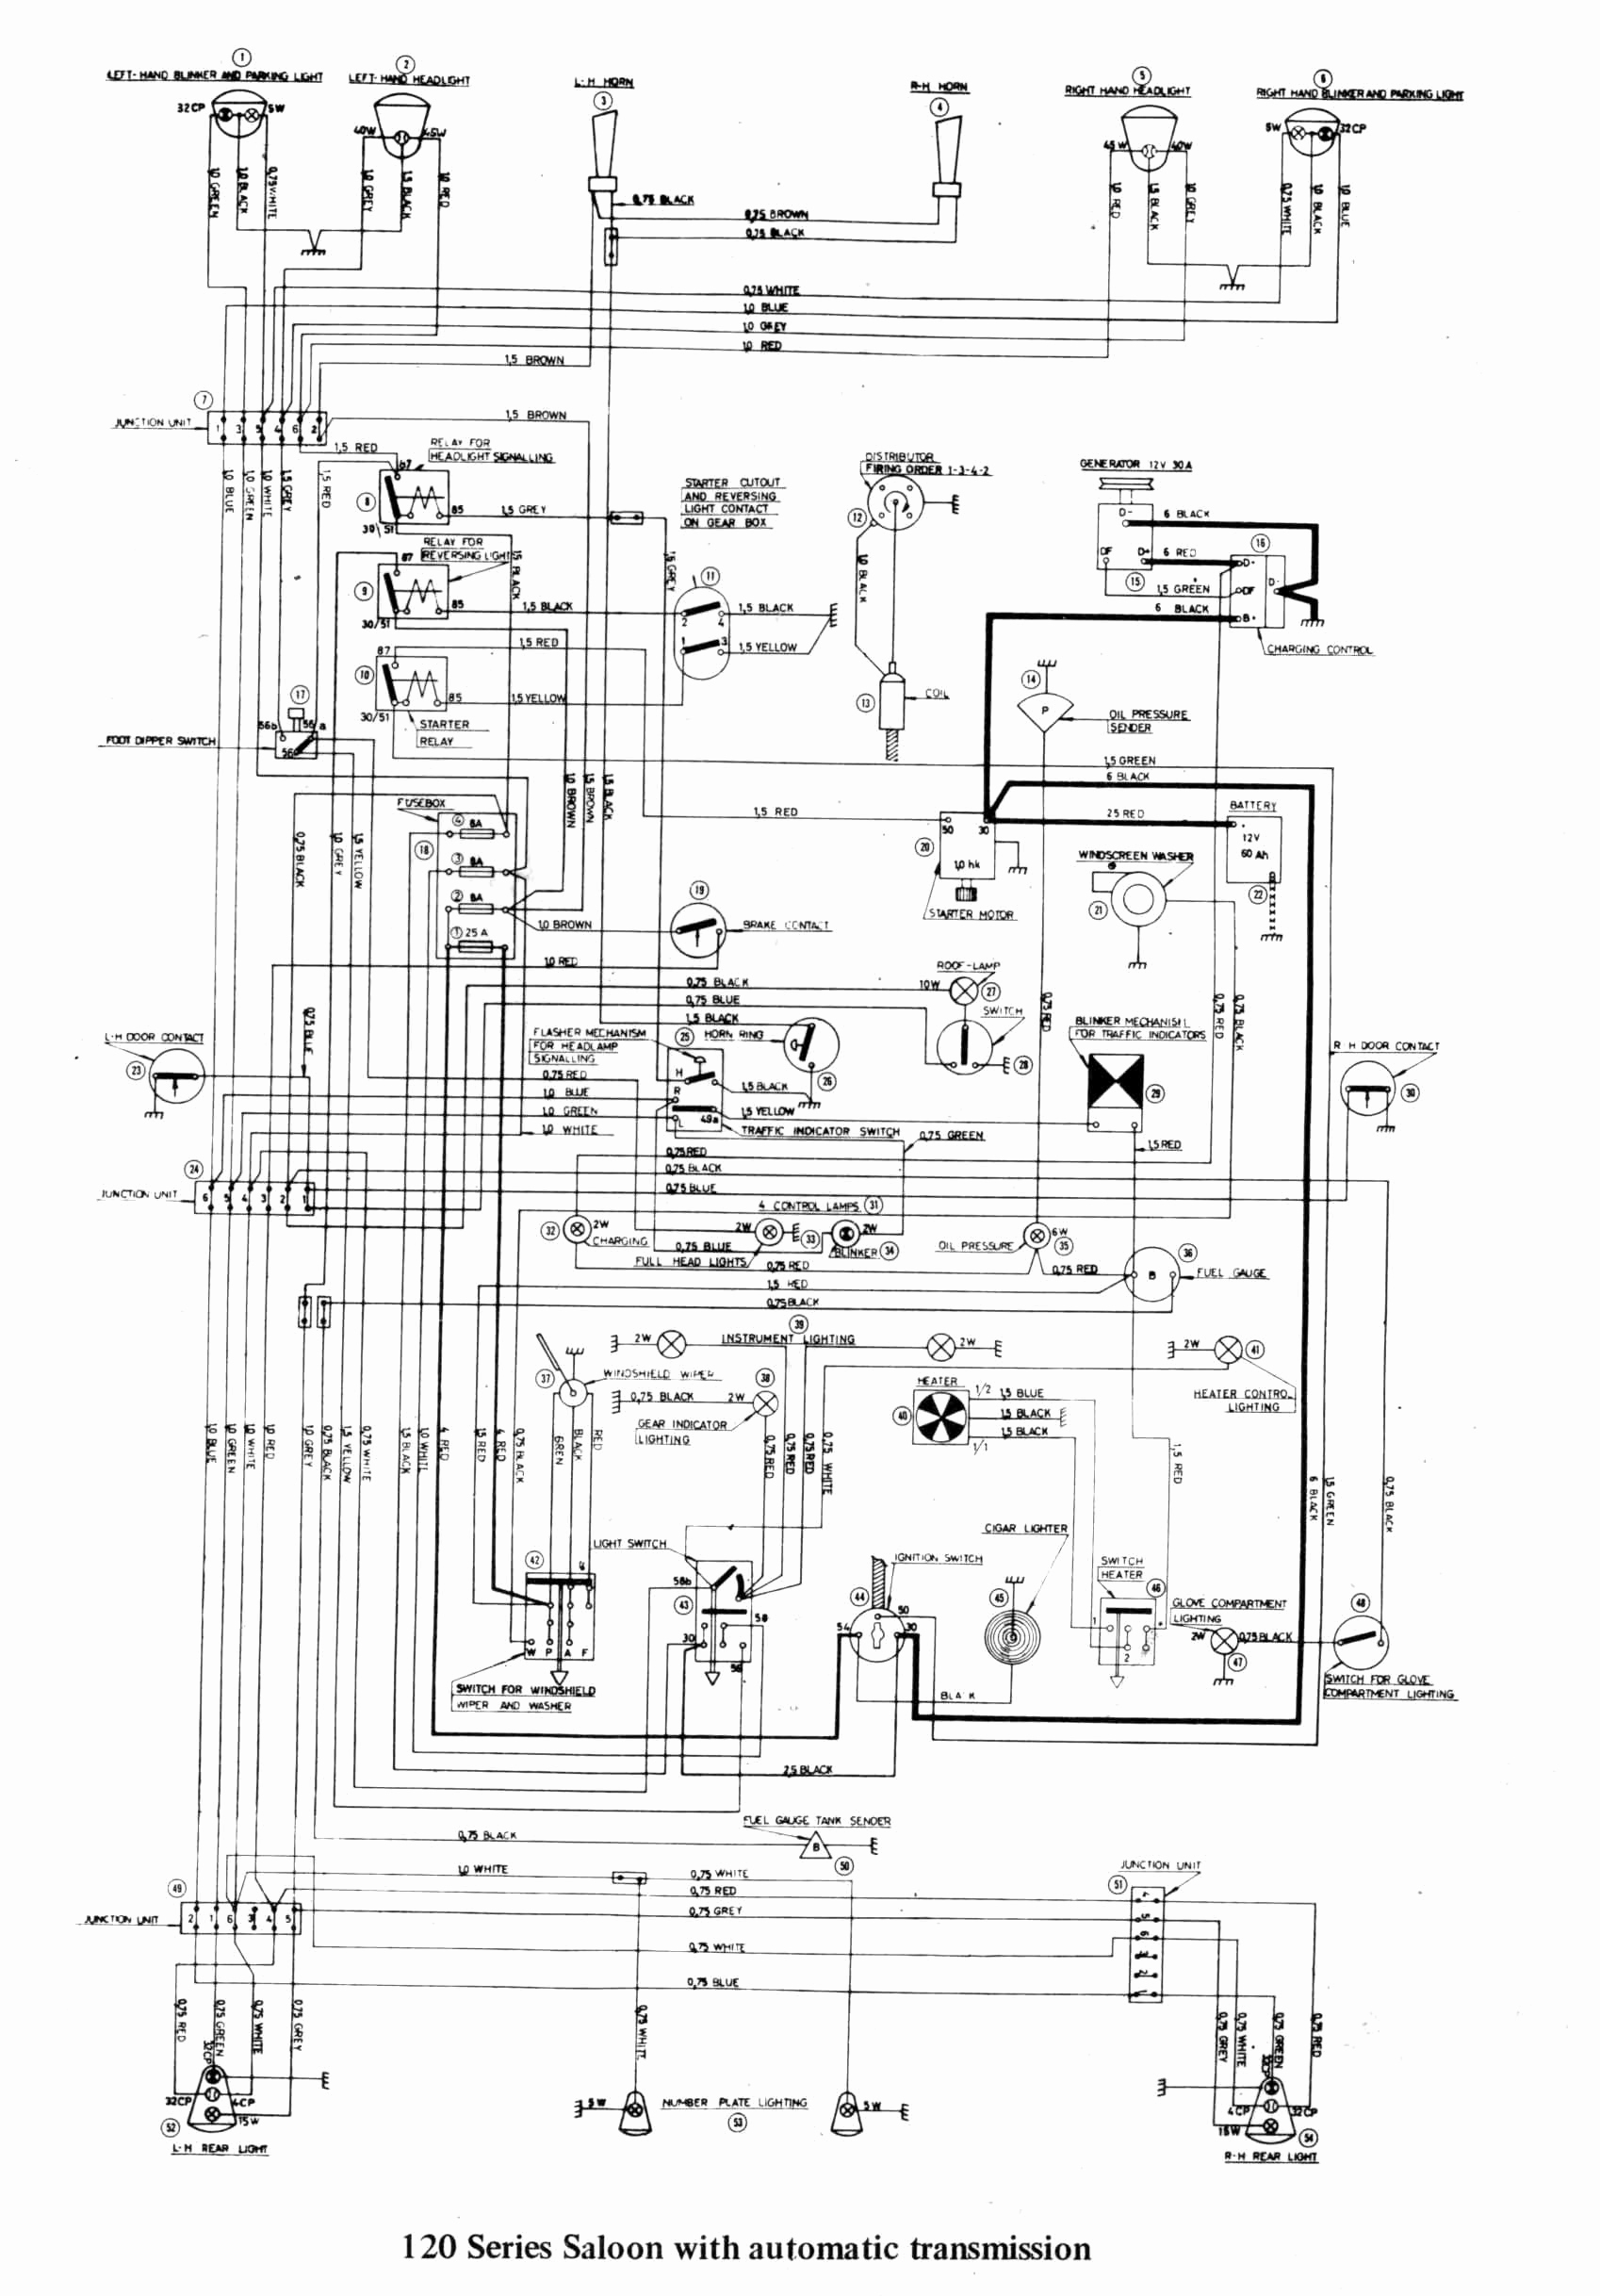 Vista 20P Wiring Diagram | Wiring Diagram - Vista 20P Wiring Diagram